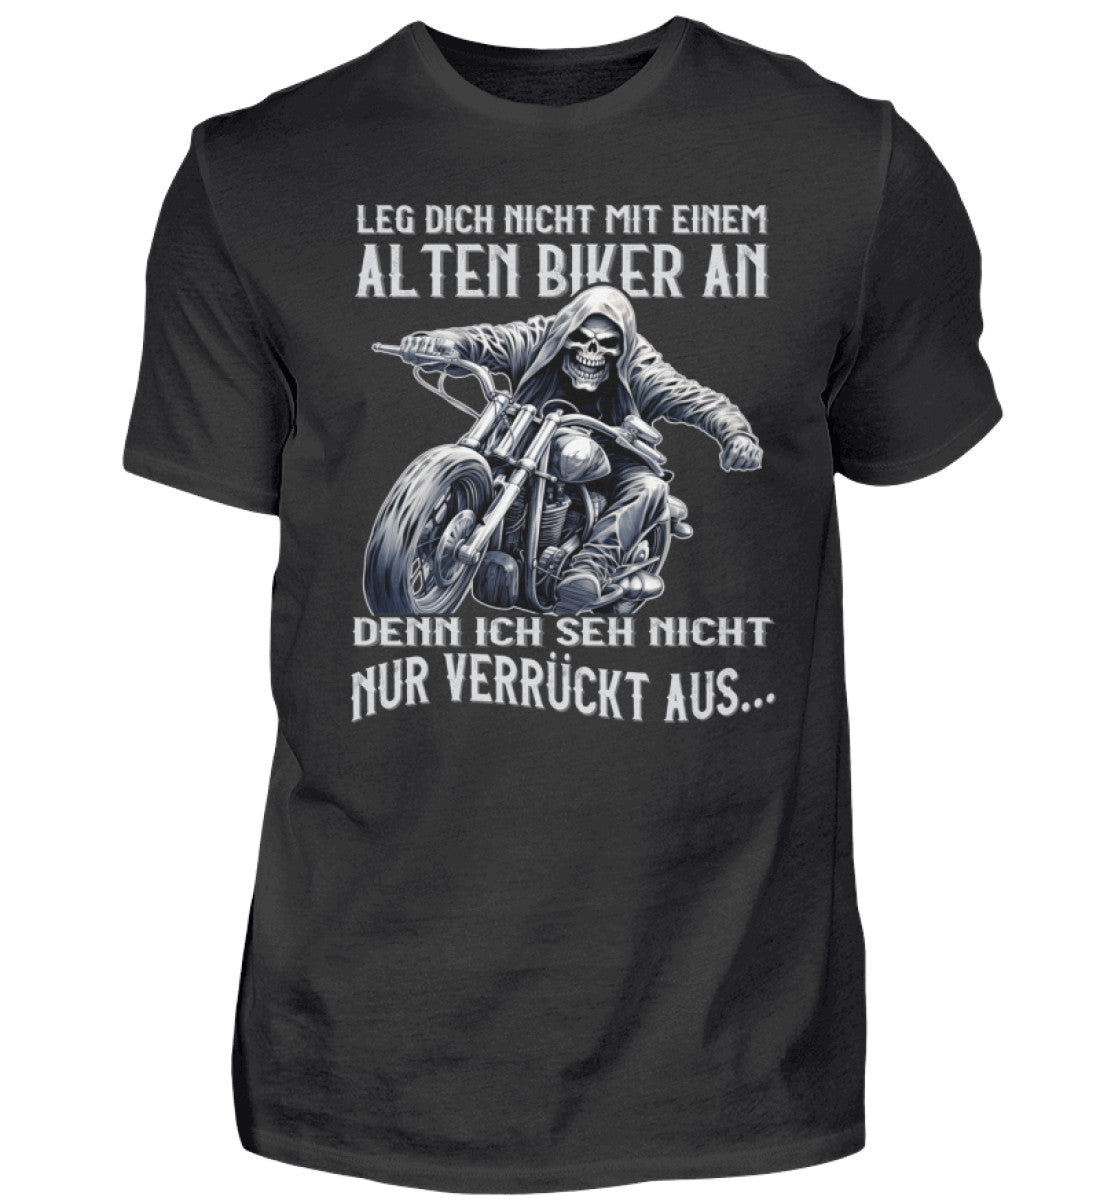 Ein Biker T-Shirt für Motorradfahrer von Wingbikers mit dem Aufdruck, Leg dich nicht mit einem alten Biker an, denn ich seh nicht nur verrückt aus - in schwarz.